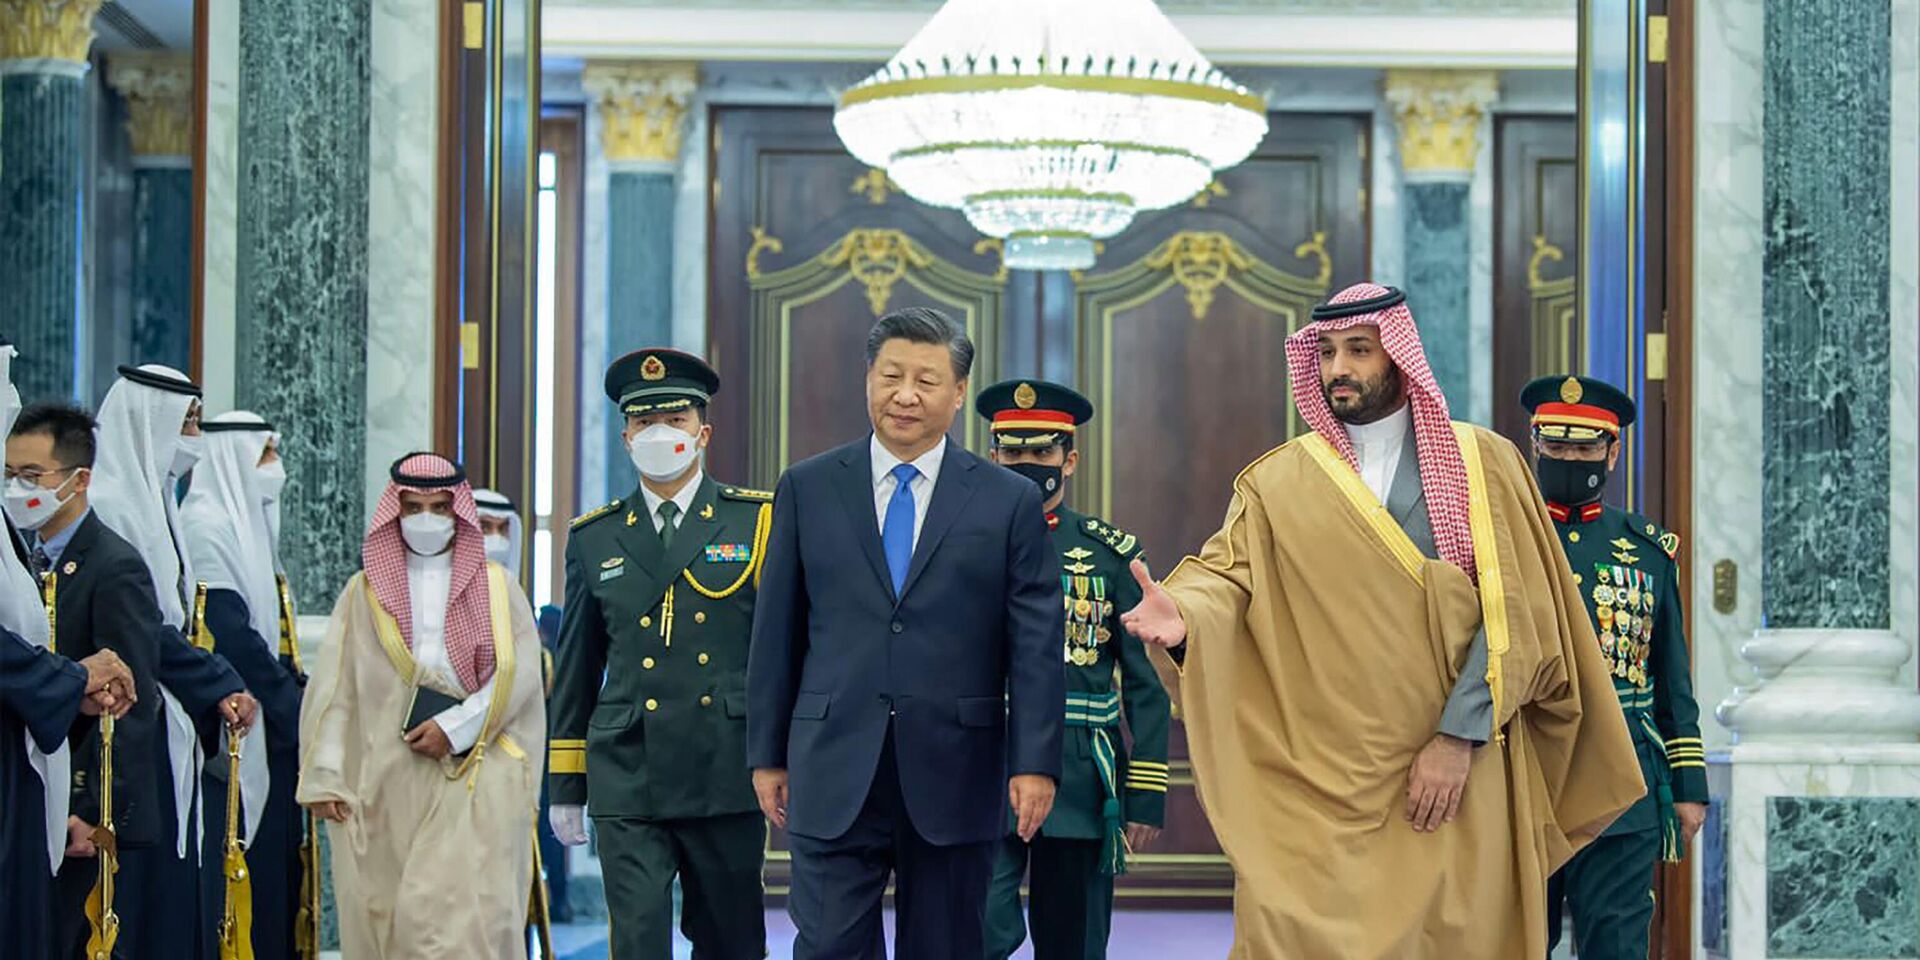 Председатель КНР Си Цзиньпин и наследный принц Саудовской Аравии Мухаммед бен Салман во время встречи в Эр-Рияде. 8 декабря 2022 года - ИноСМИ, 1920, 09.12.2022